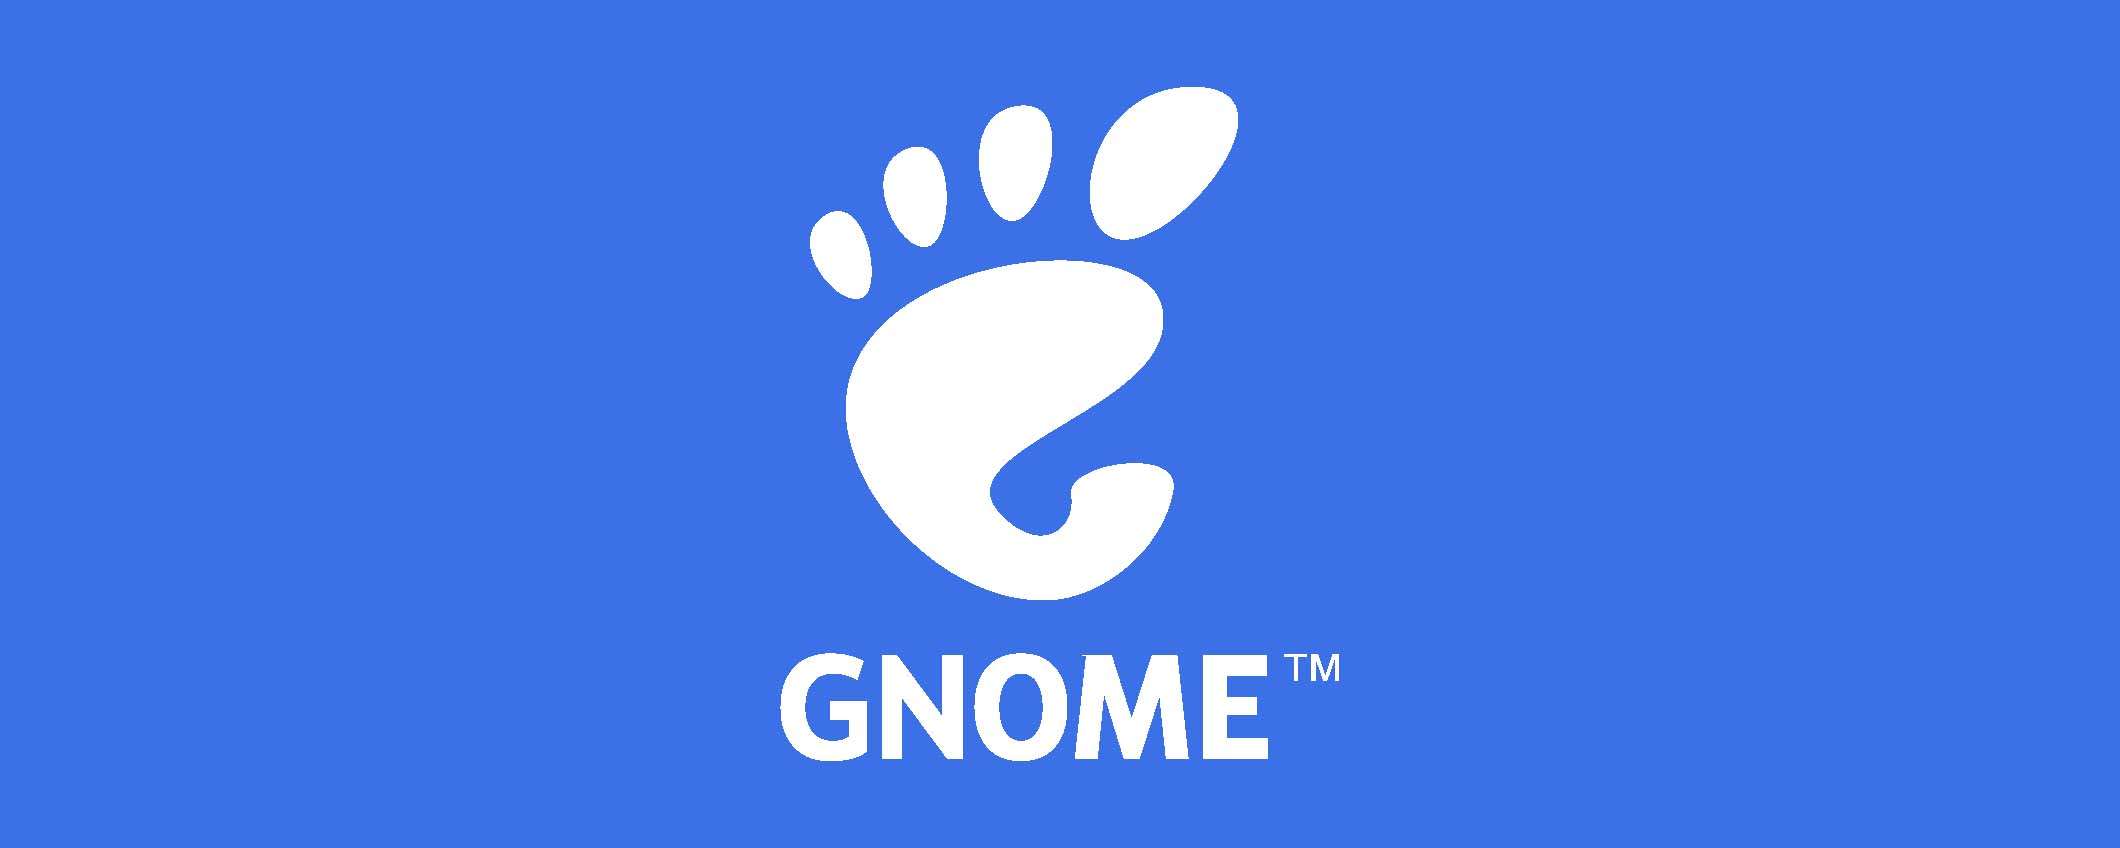 Gnome 47: svelata la data di rilascio della nuova versione